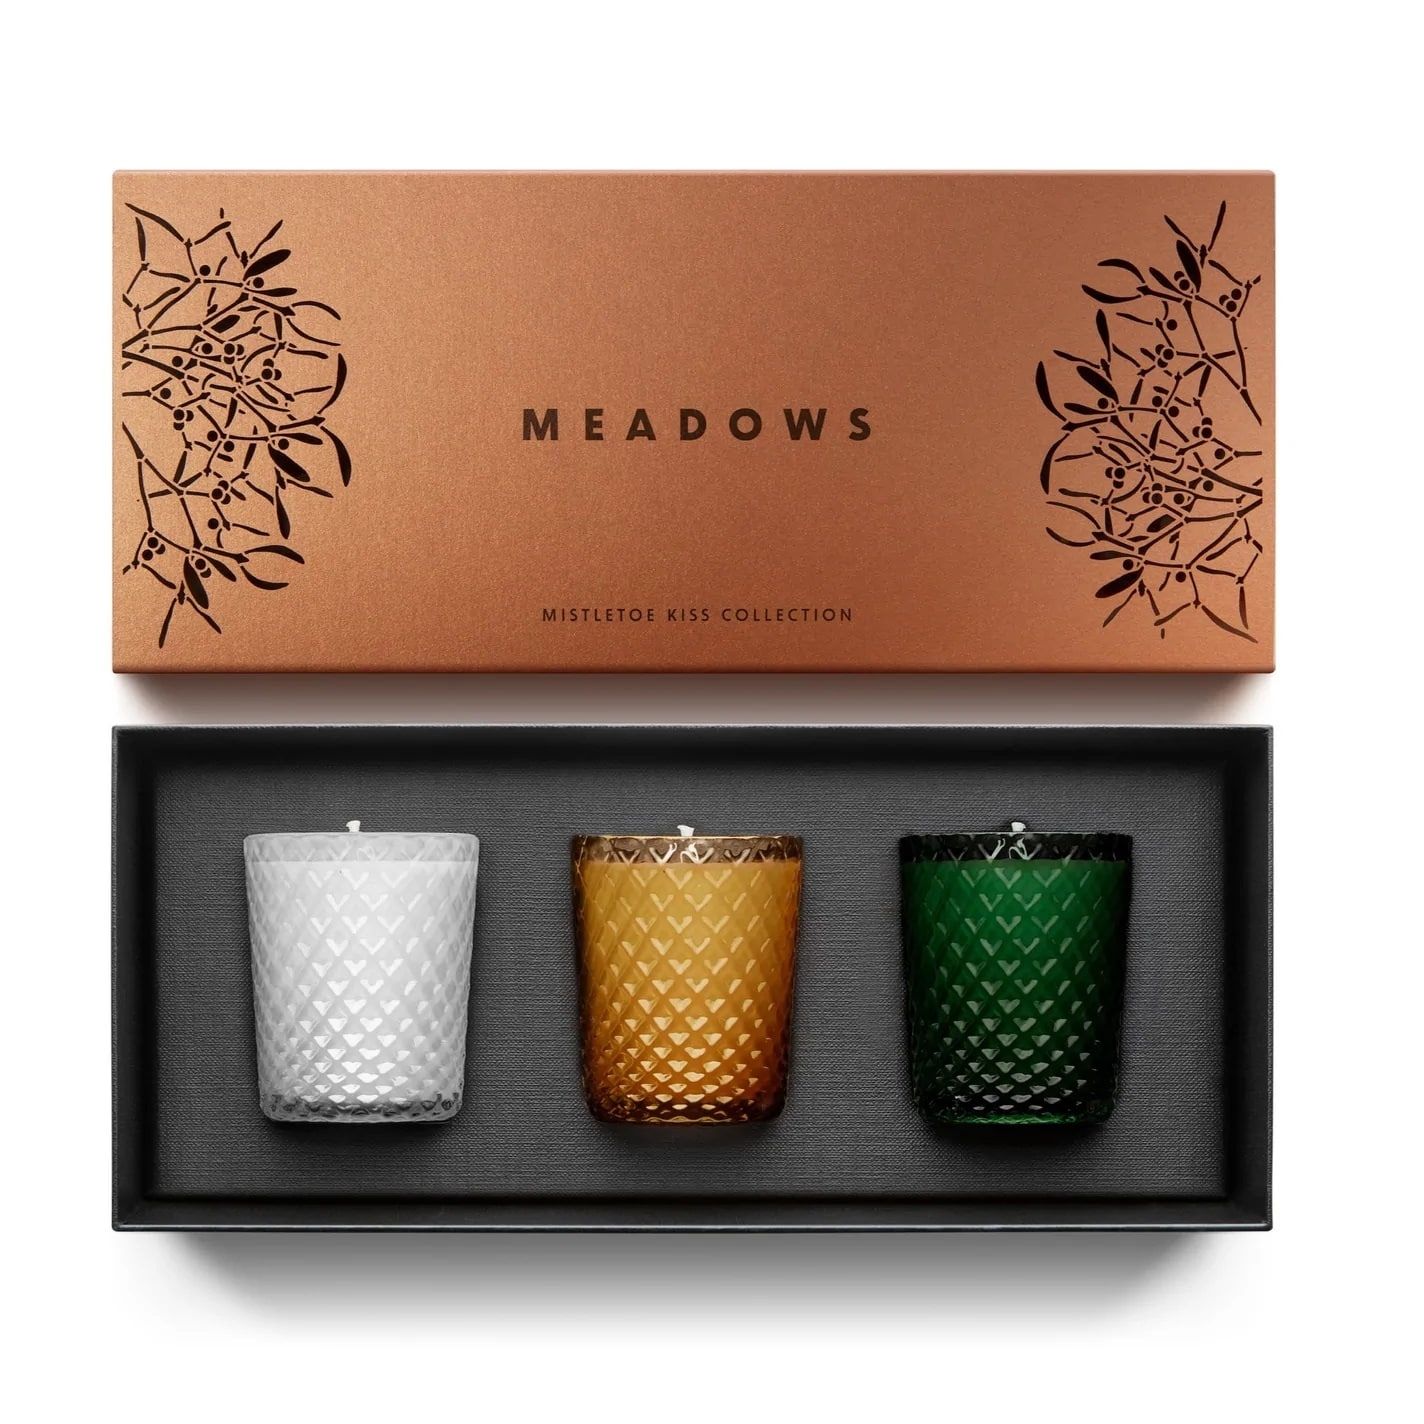 MEADOWS Darčeková kolekcia sviečok Meadows - Mistletoe Kiss